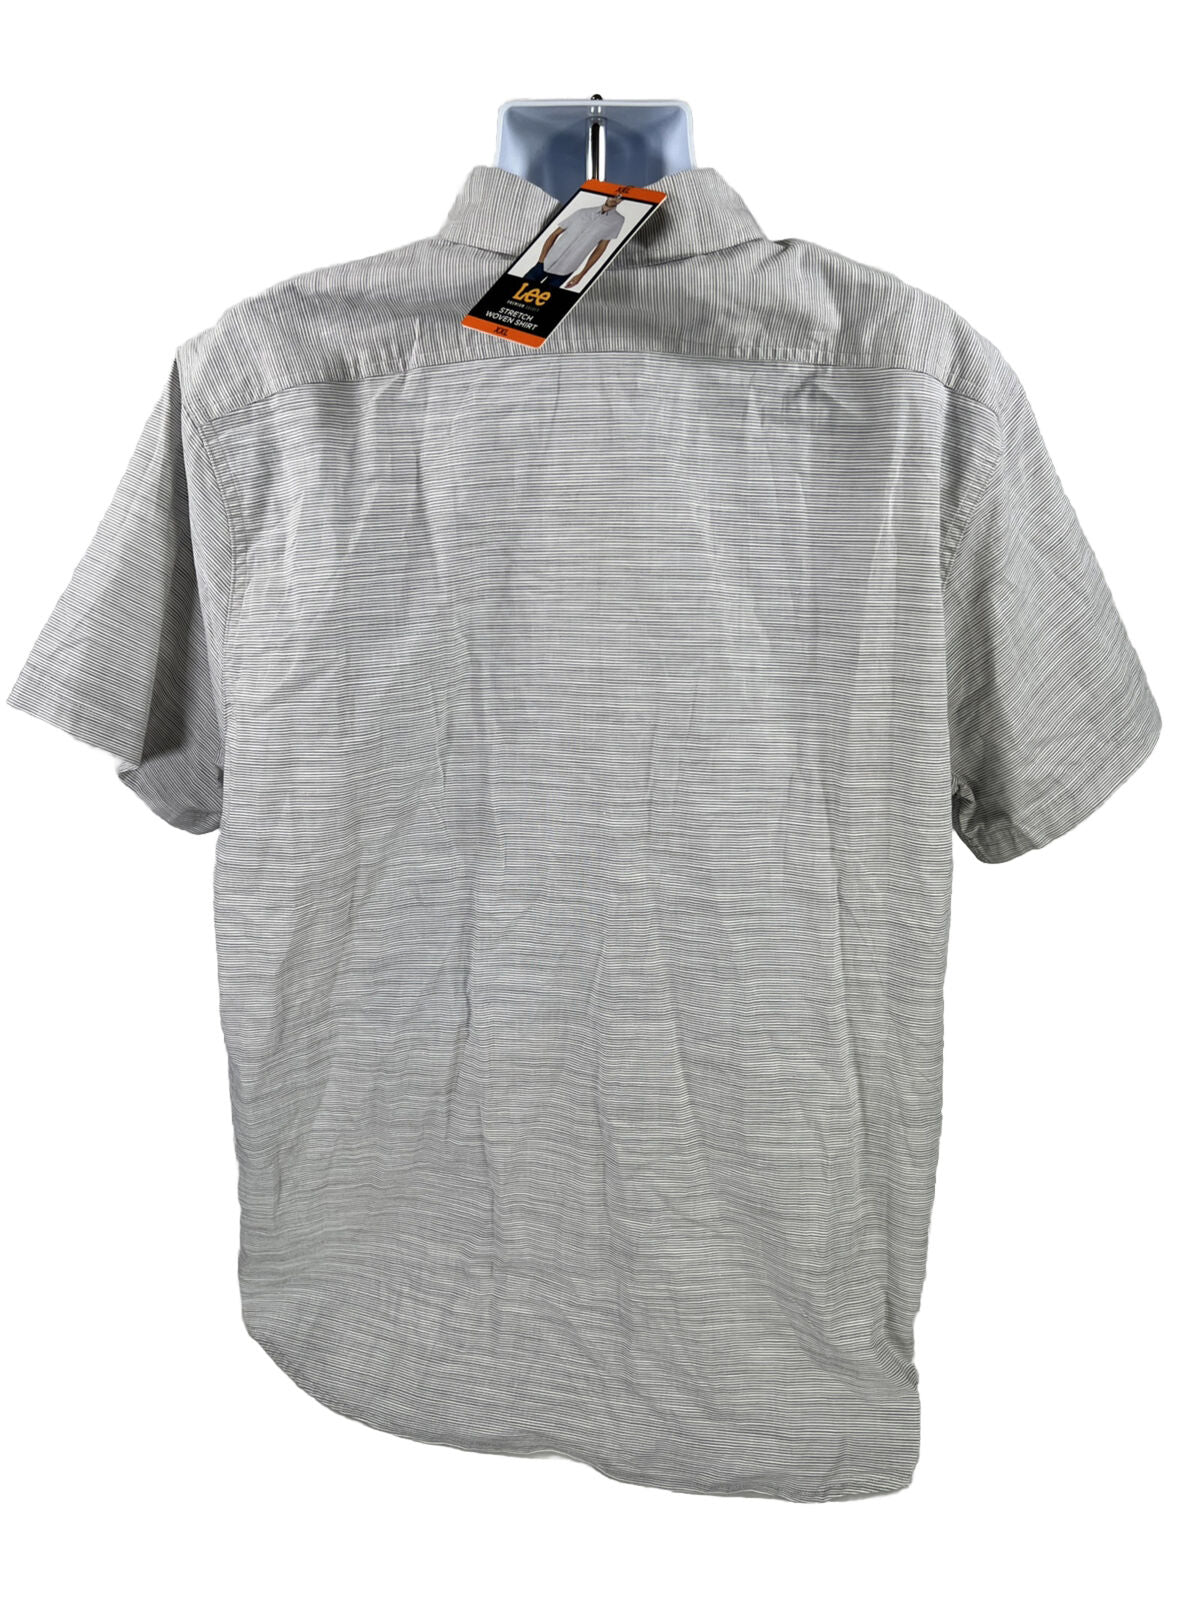 NUEVO Camisa con botones de manga corta a rayas grises de Lee para hombre - XXL